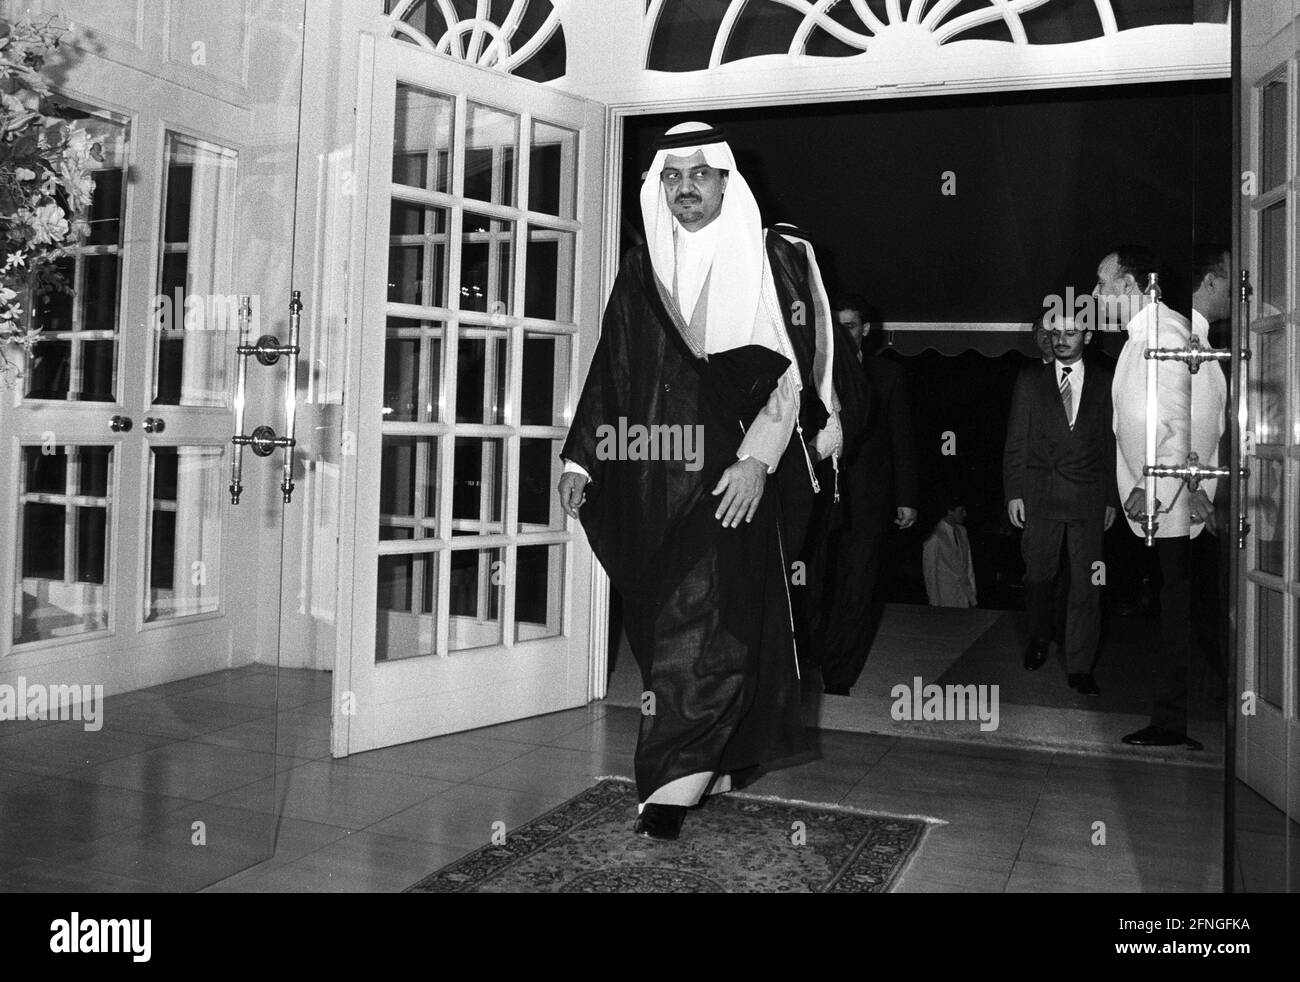 Germania, Bonn, 10.10.1990 Archivio n.: 20-69-03 Visita del ministro degli Esteri Saudita Principe Faisal Foto: Prince Faisal [traduzione automatizzata] Foto Stock